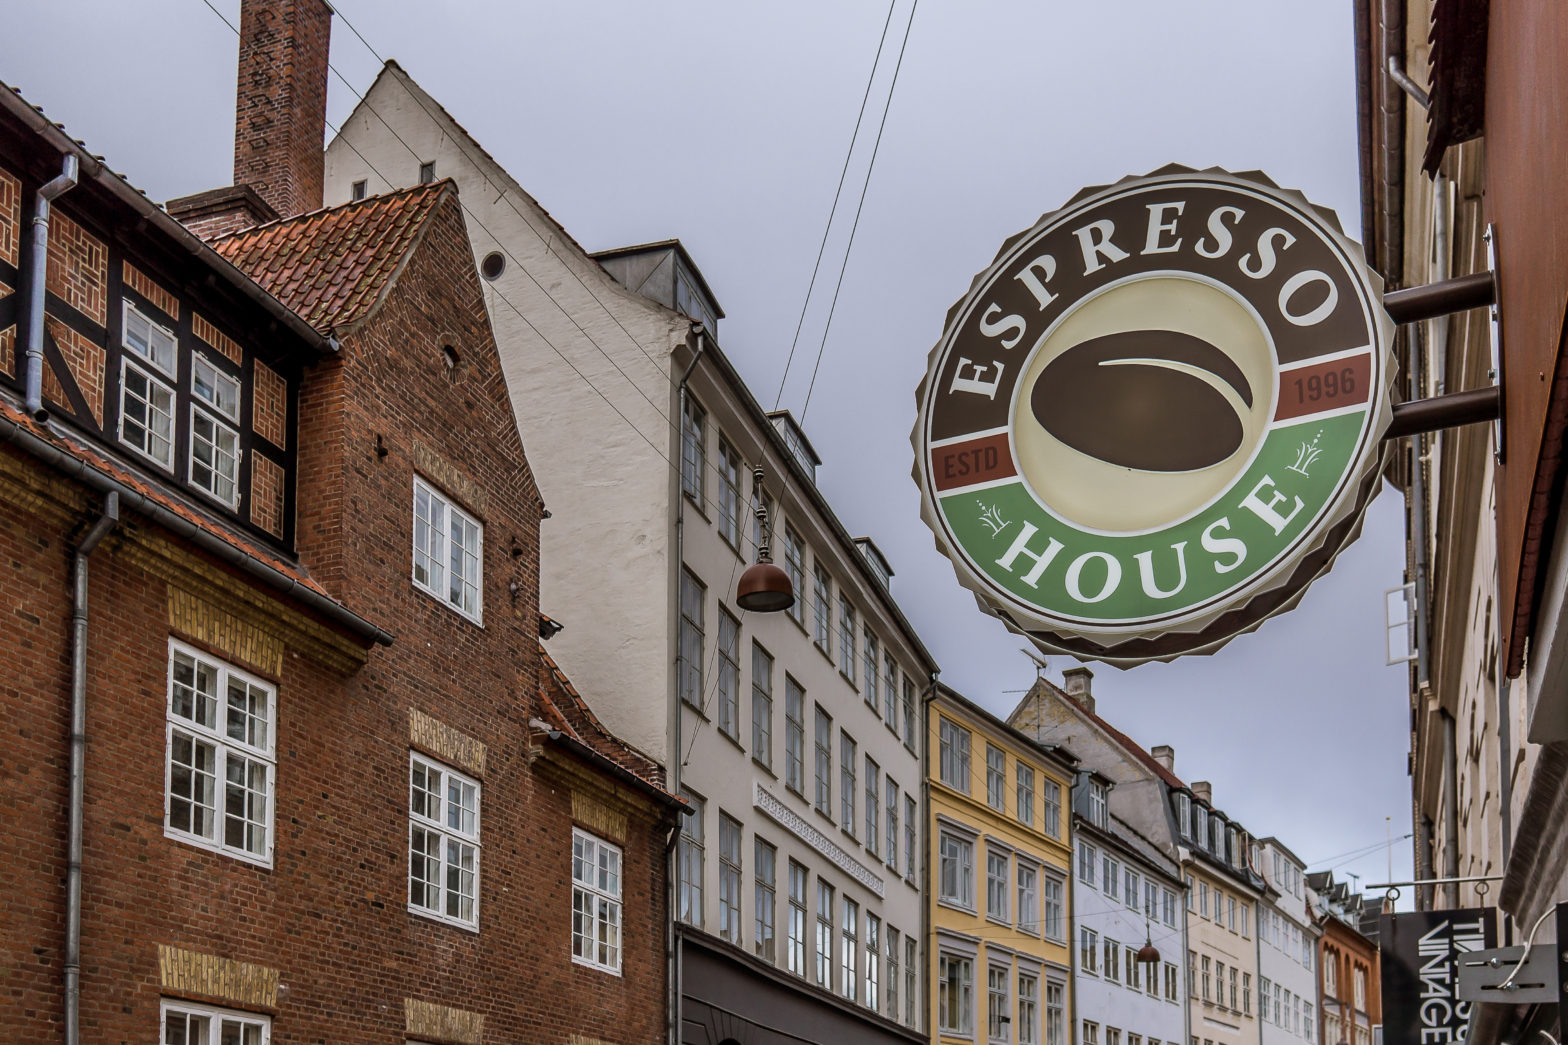 Espresso House uppnått hälften av produktsortimentet växtbaserat